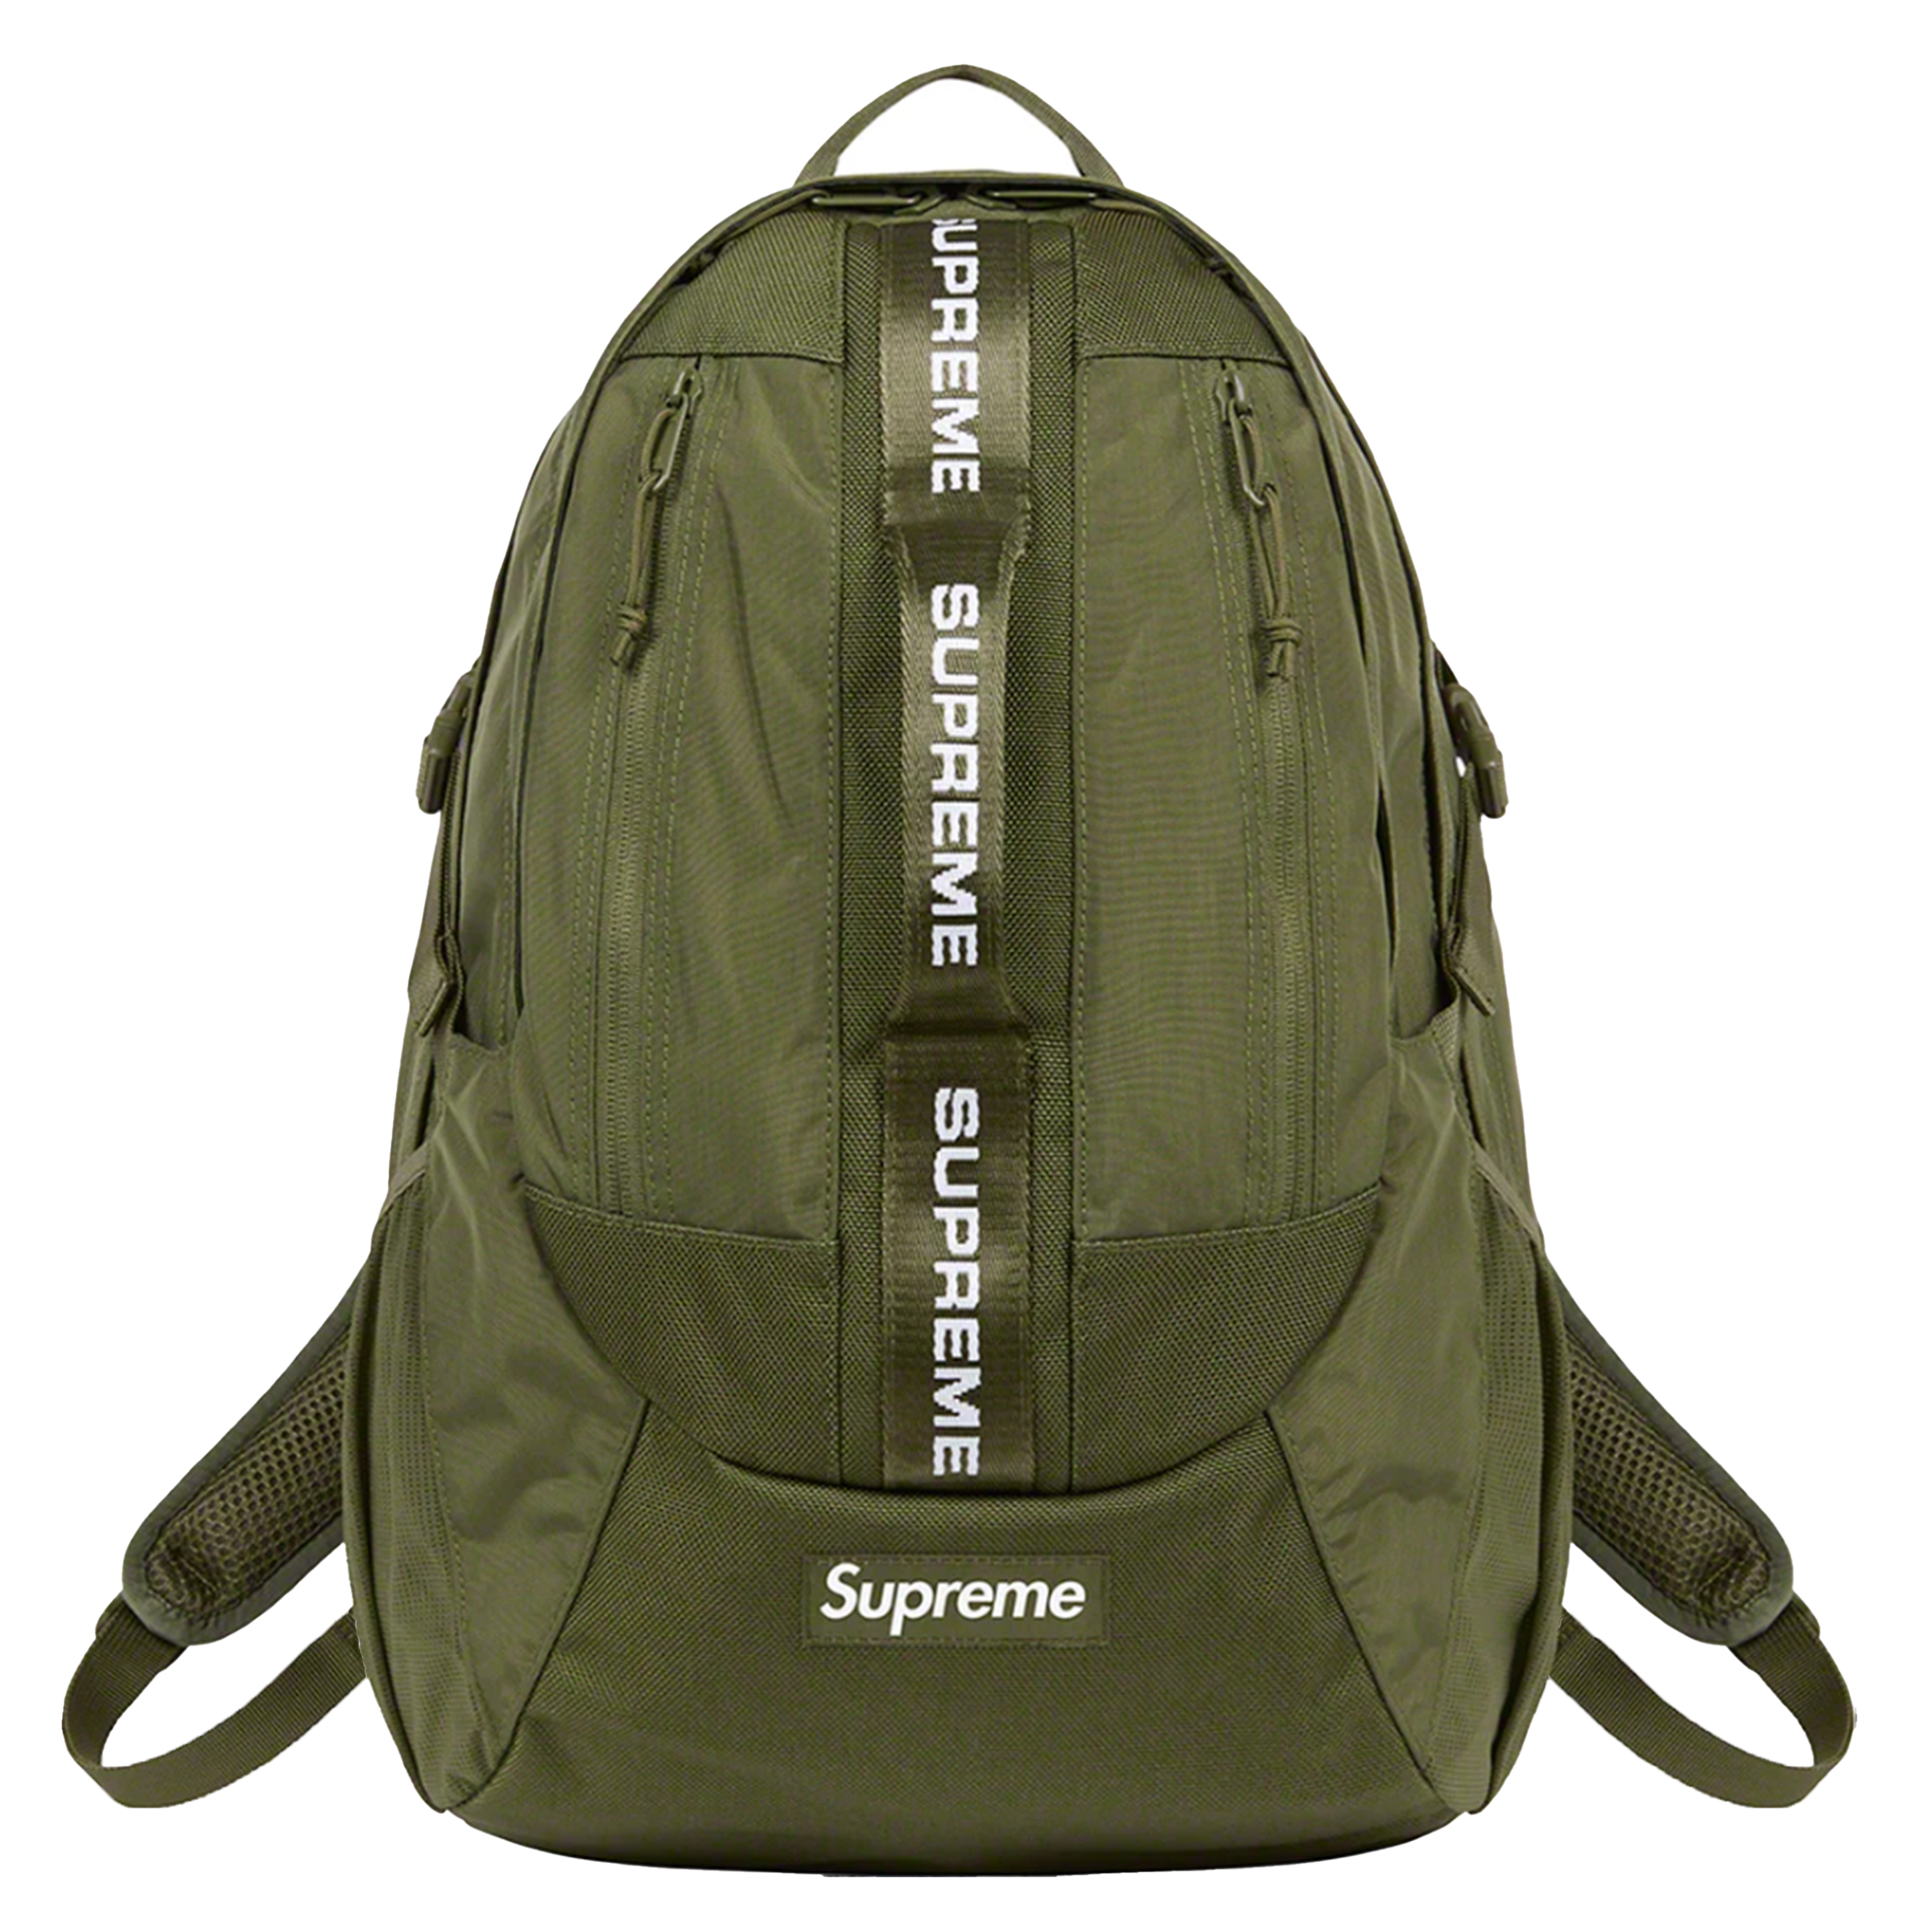 Supreme "Olive" - Backpack